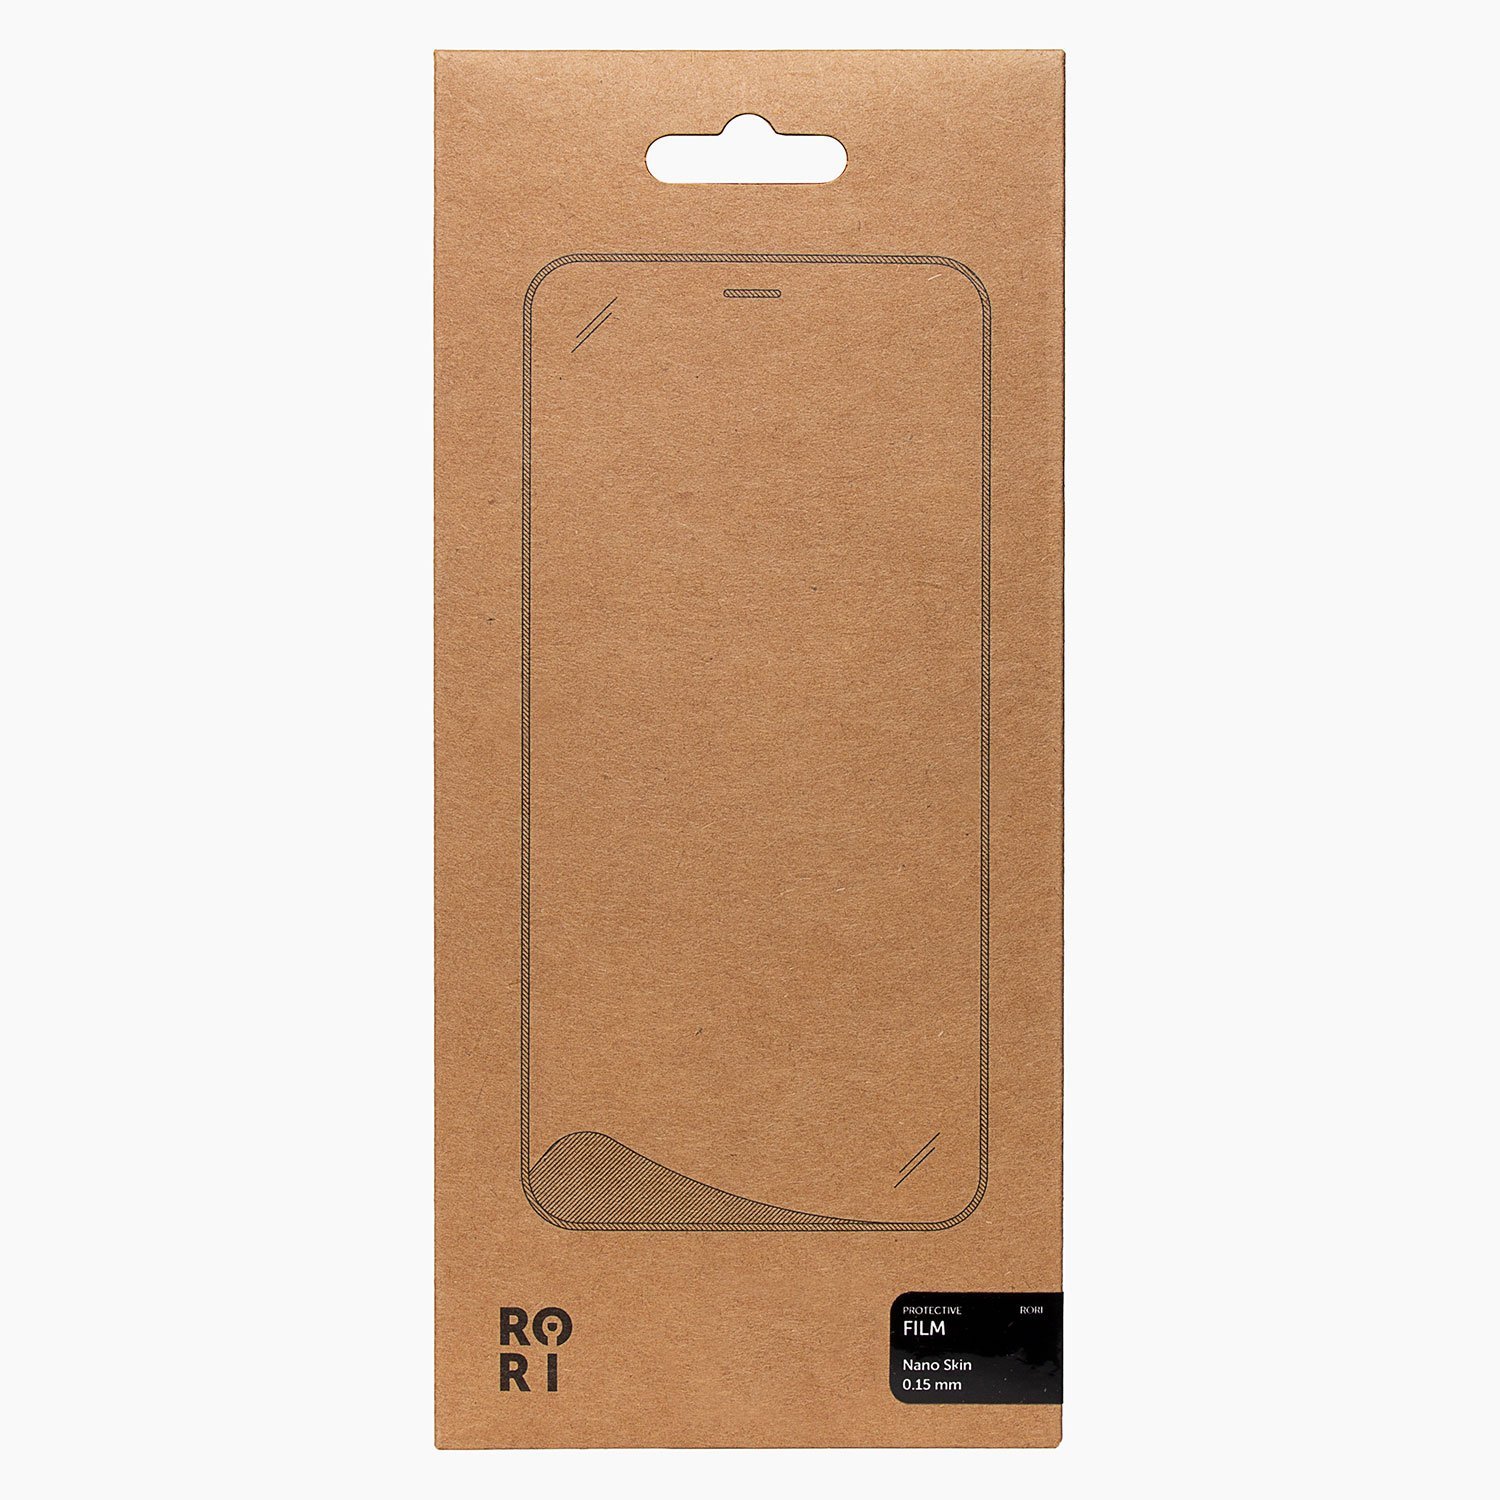 Защитная пленка Rori Polymer для экрана смартфона Apple iPhone 6 Plus/6S Plus, FullScreen, черная рамка (119491)